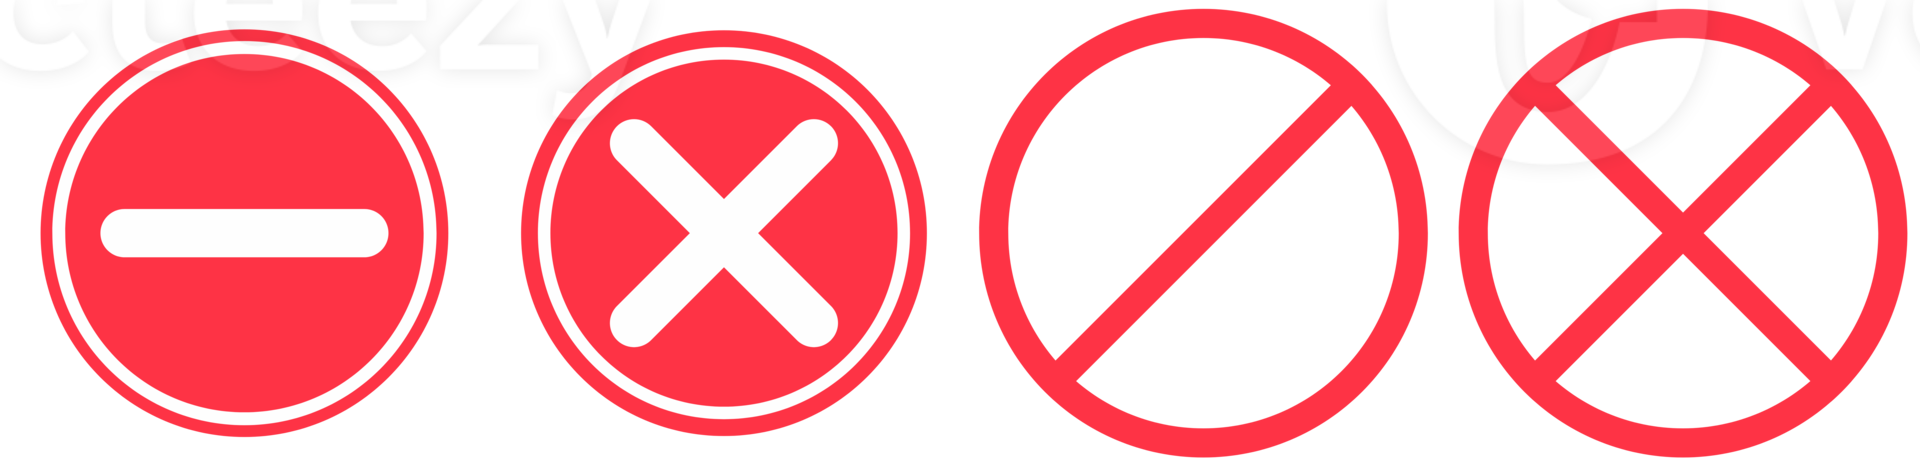 stop no and ban icon set png